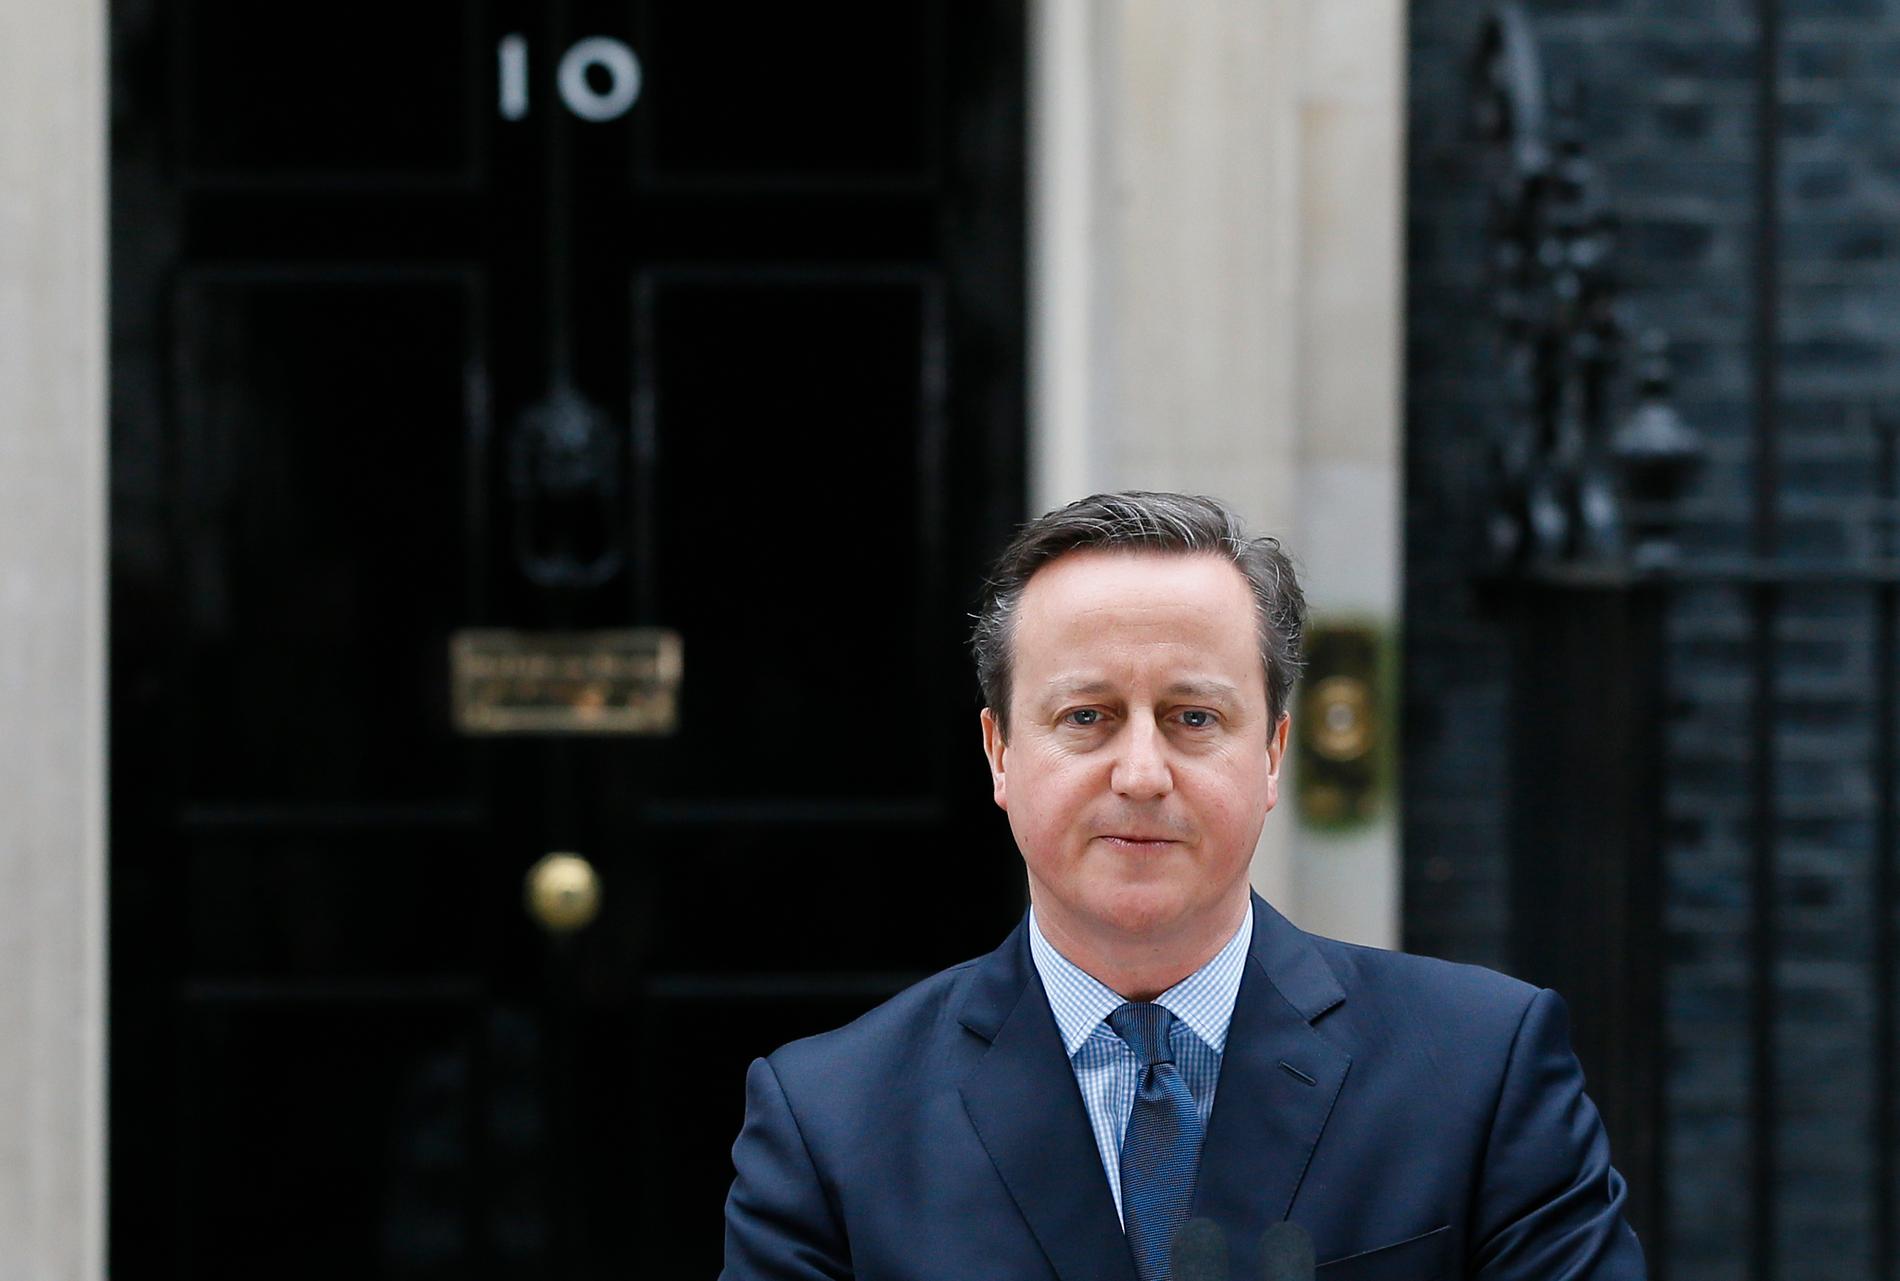 Fredag morgen kunngjorde David Cameron at han trekker seg som statsminister i Storbritannia etter EU-nederlaget i folkeavstemningen. Han gamblet høyt, da han lovet folket en avstemning om unionen. 